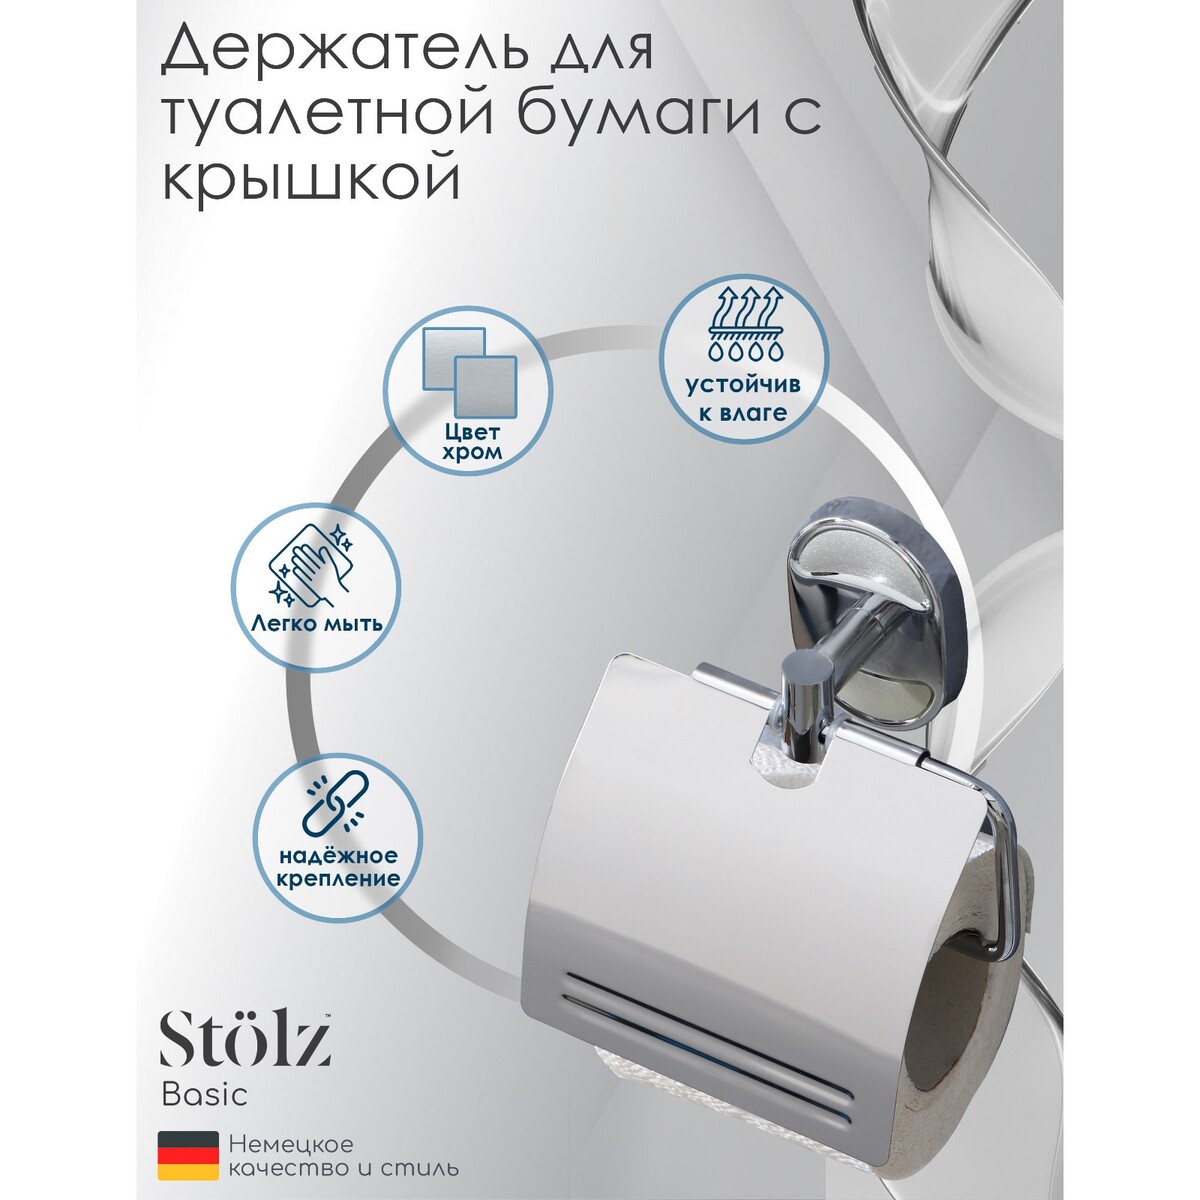 Держатель для туалетной бумаги с крышкой штольц stölz держатель для туалетной бумаги штольц stölz 16 2×2 5×9 5 см нержавеющая сталь